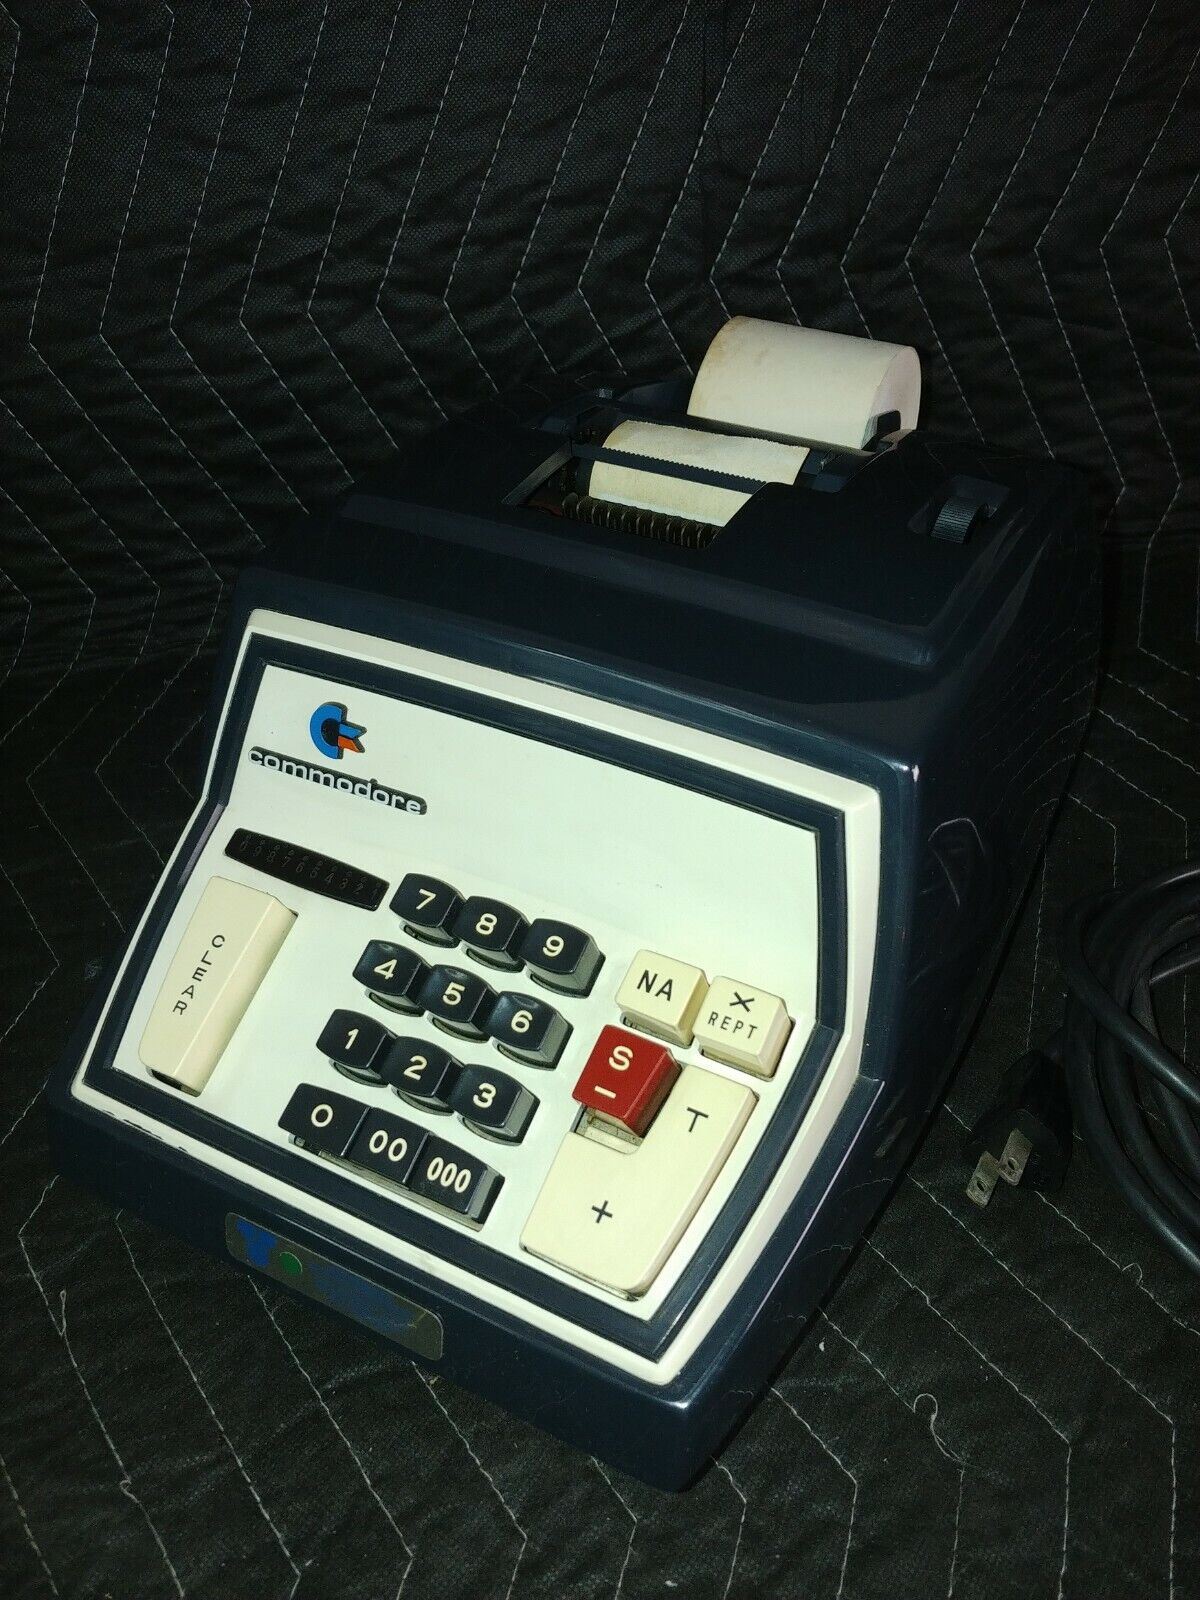 Commodore Model CBM 202 Adding Machine Calculator